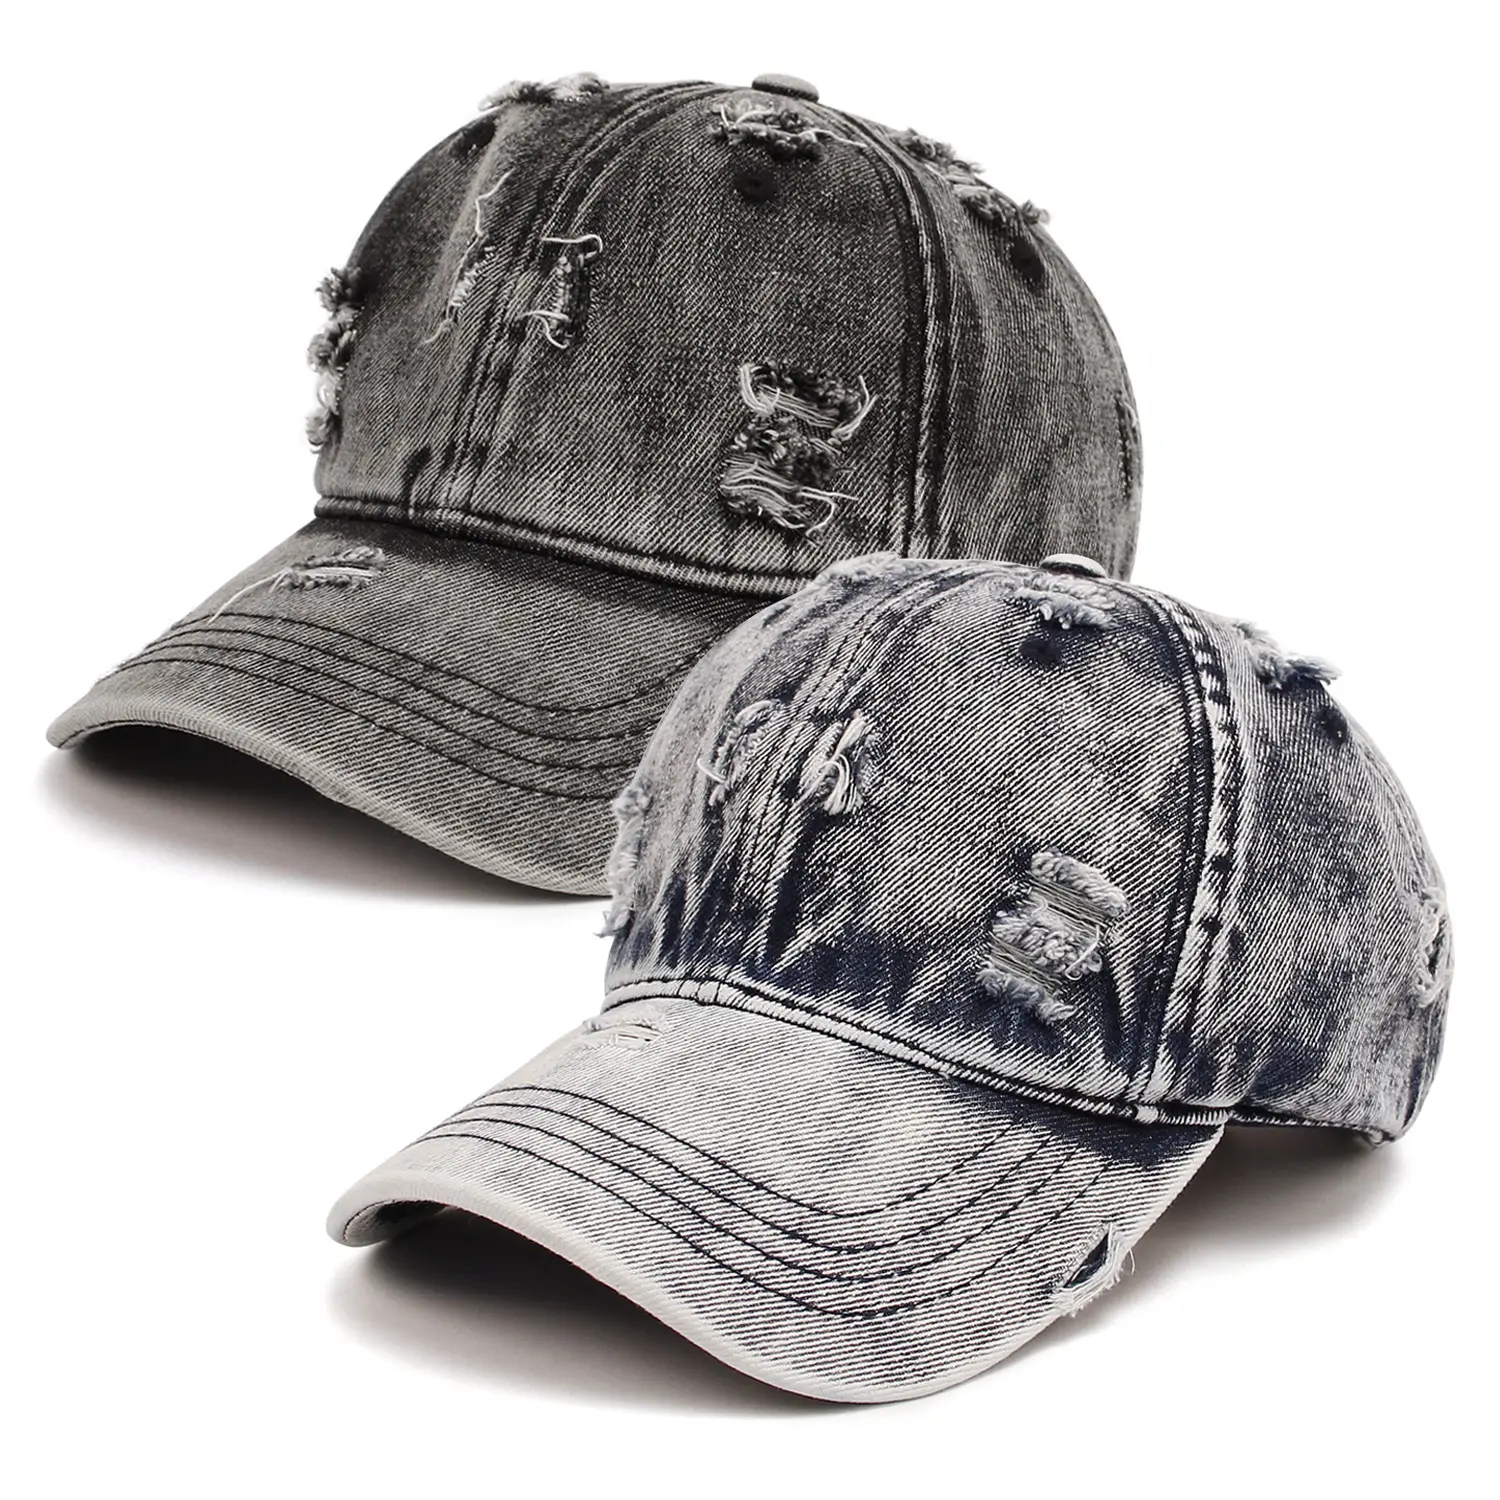 2023 גברים נשים בייסבול Ripped נהרס חור ג 'ינס כובעי נוער מגניב היפ הופ Snapback באיכות גבוהה מגן שמש חיצוני ג' ינס כובע